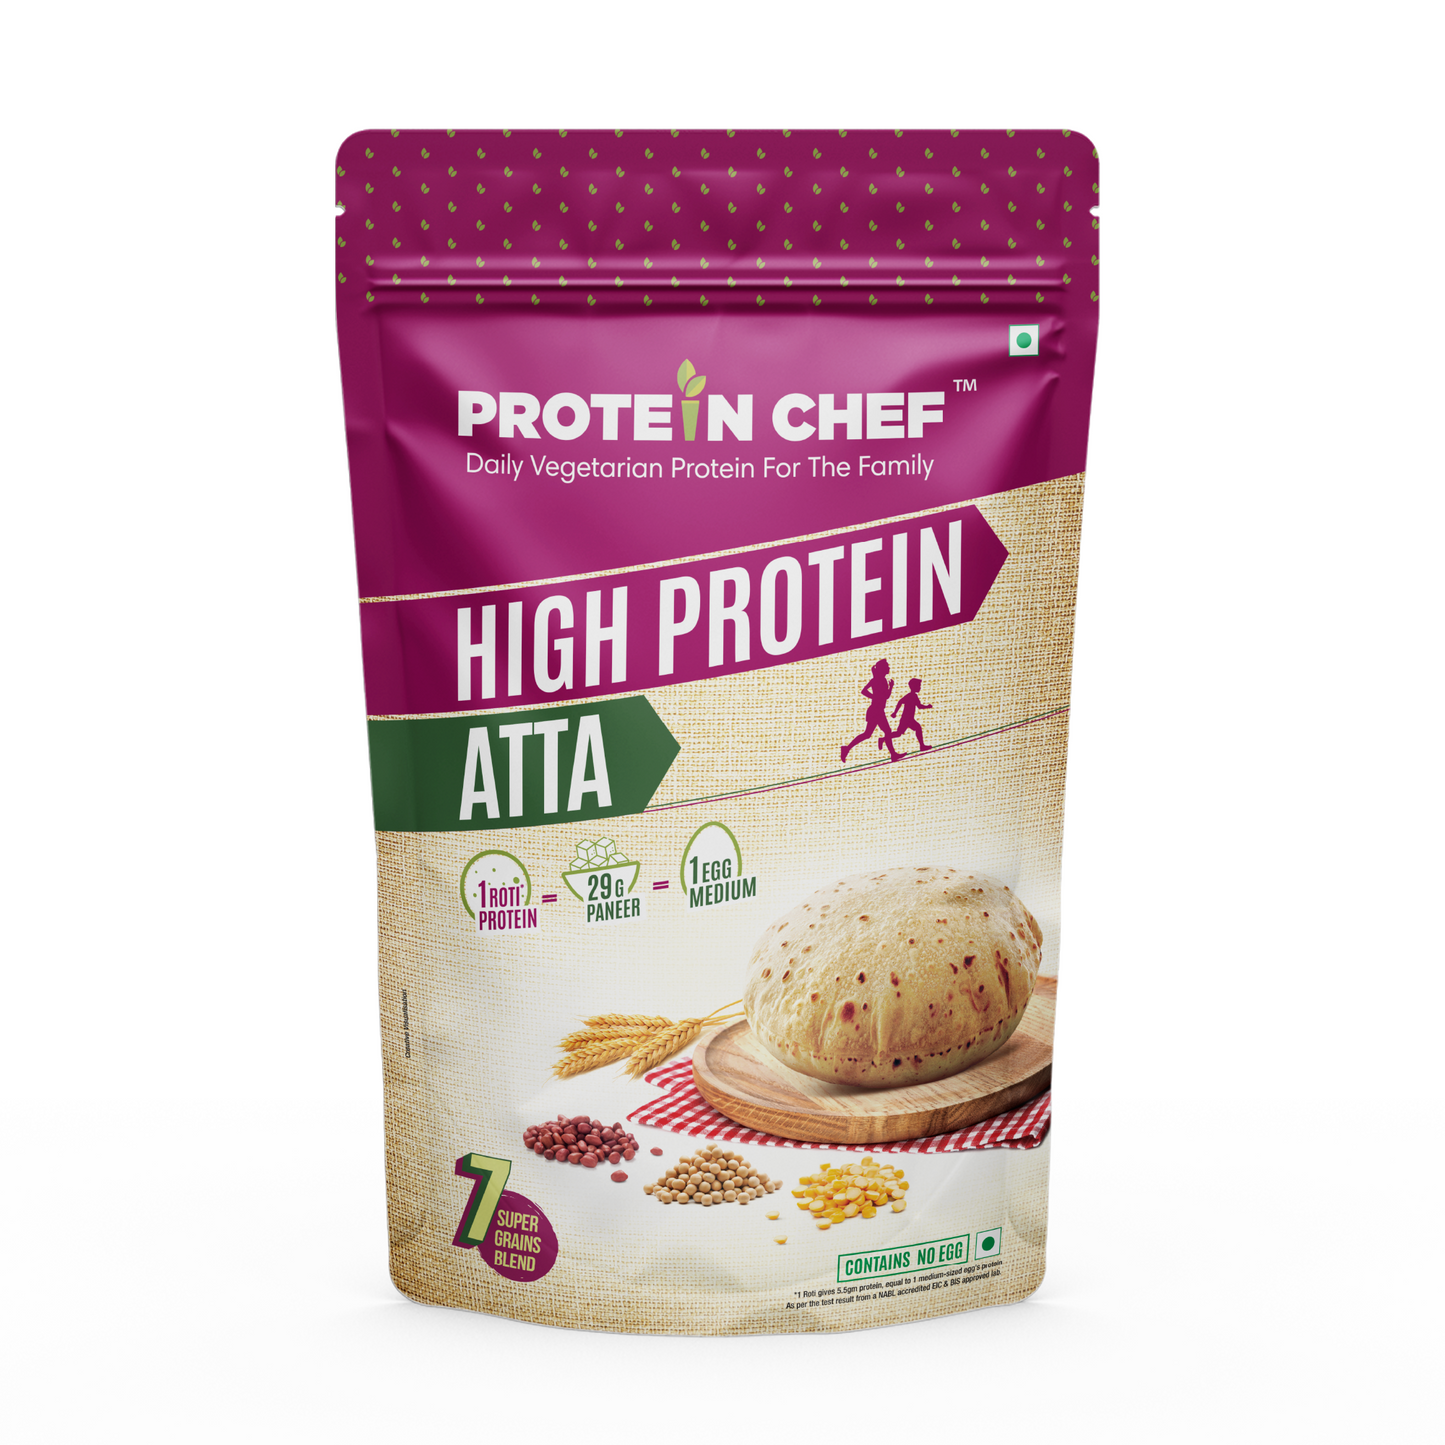 High Protein Atta + Protein Chef PRO